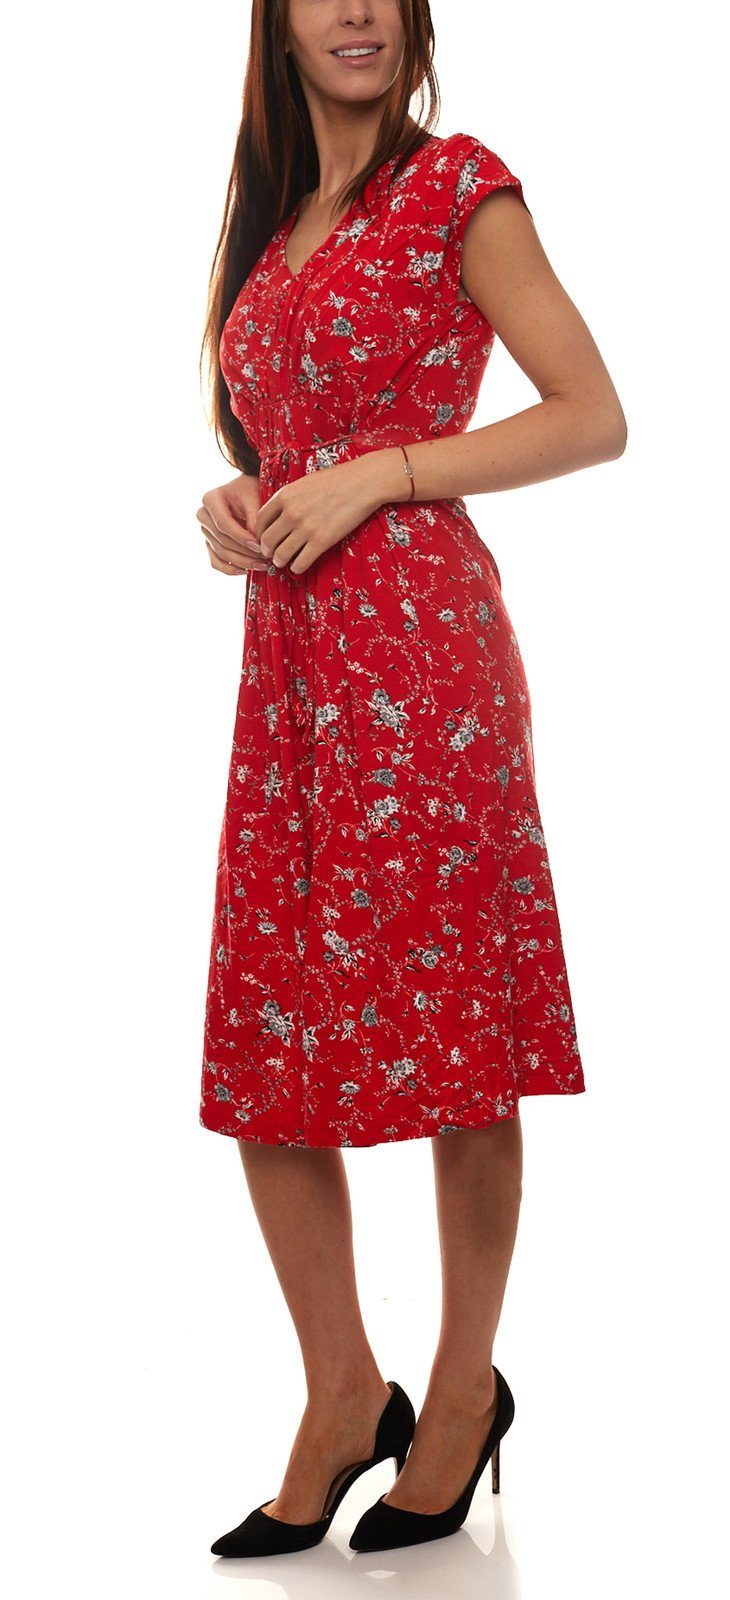 Joe Browns Jerseykleid »Joe Browns Jersey-Kleid wunderschönes Damen Sommer- Kleid Freizeit-Kleid mit Alloverdruck Rot« online kaufen | OTTO